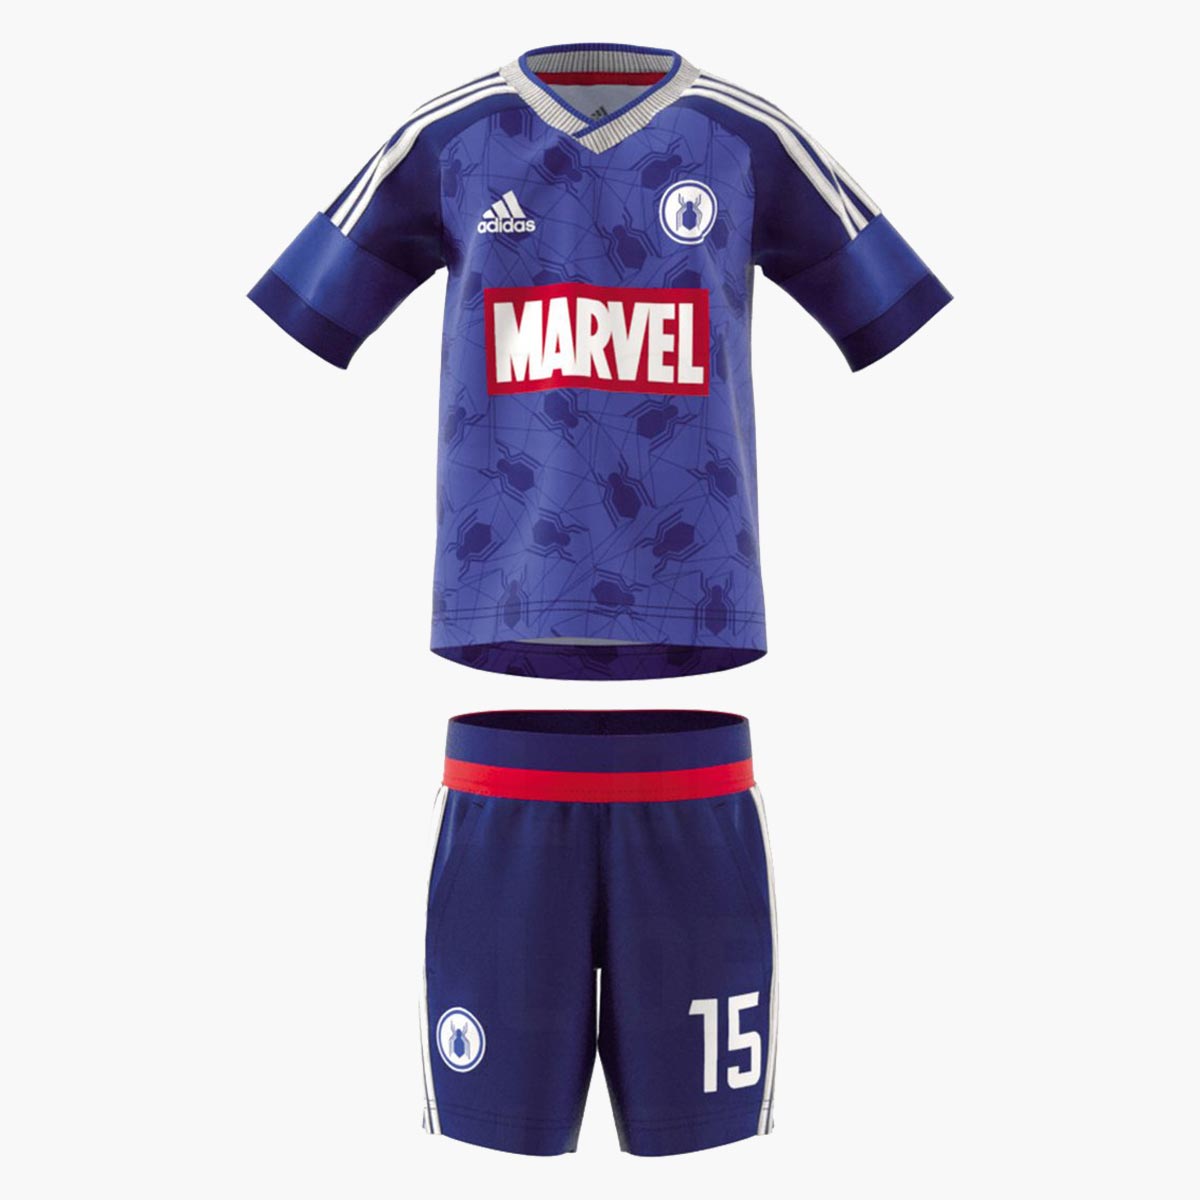 Adidas Marvel SpiderMan 2018 Football Kit Leaked Footy